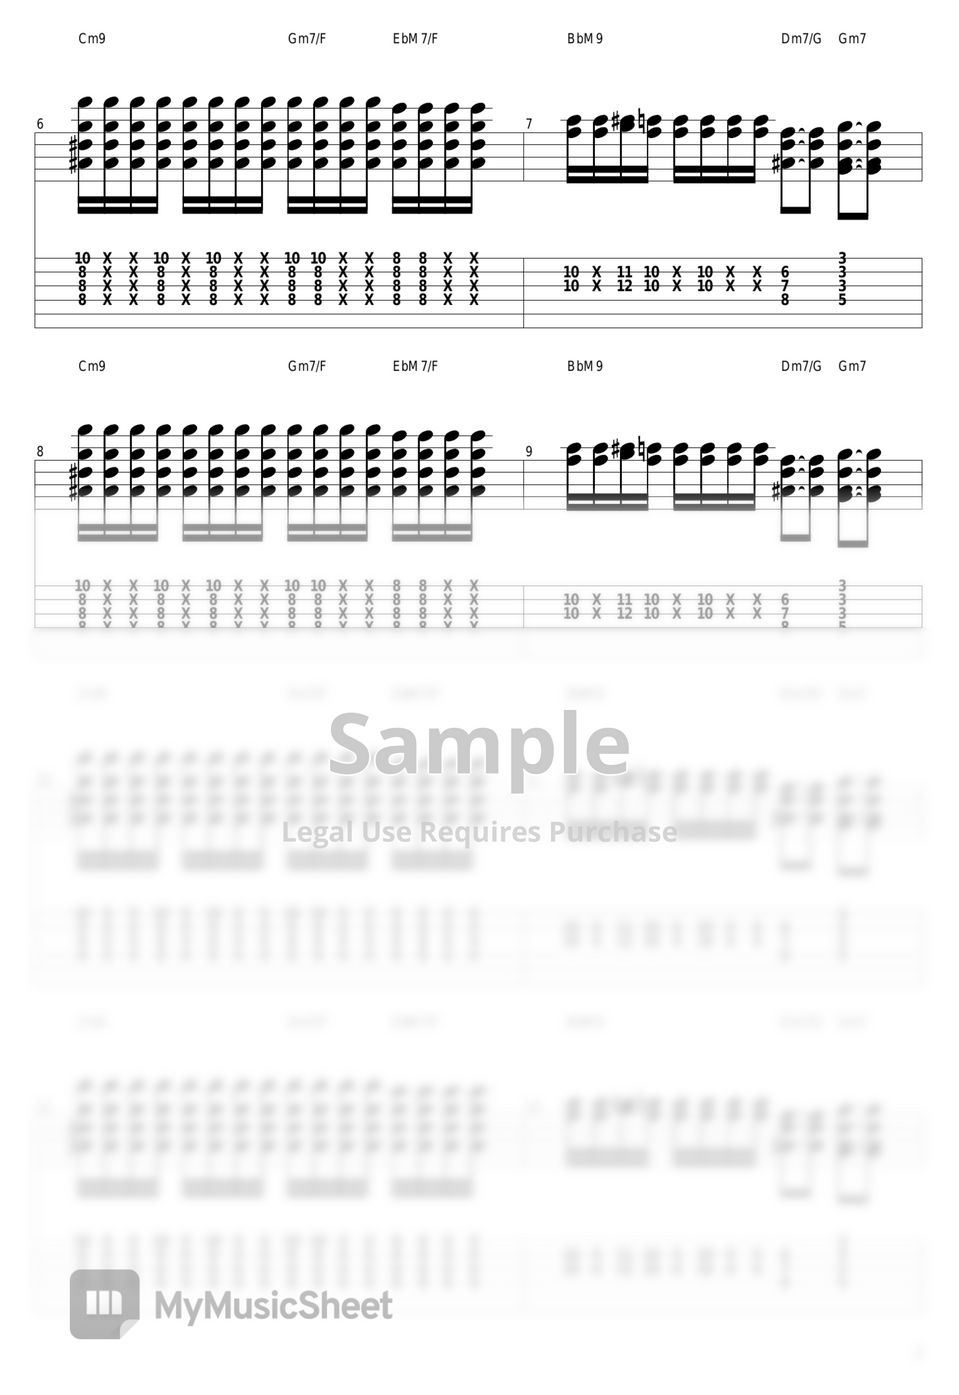 山下達郎 - Music Book by guitar cover with tab